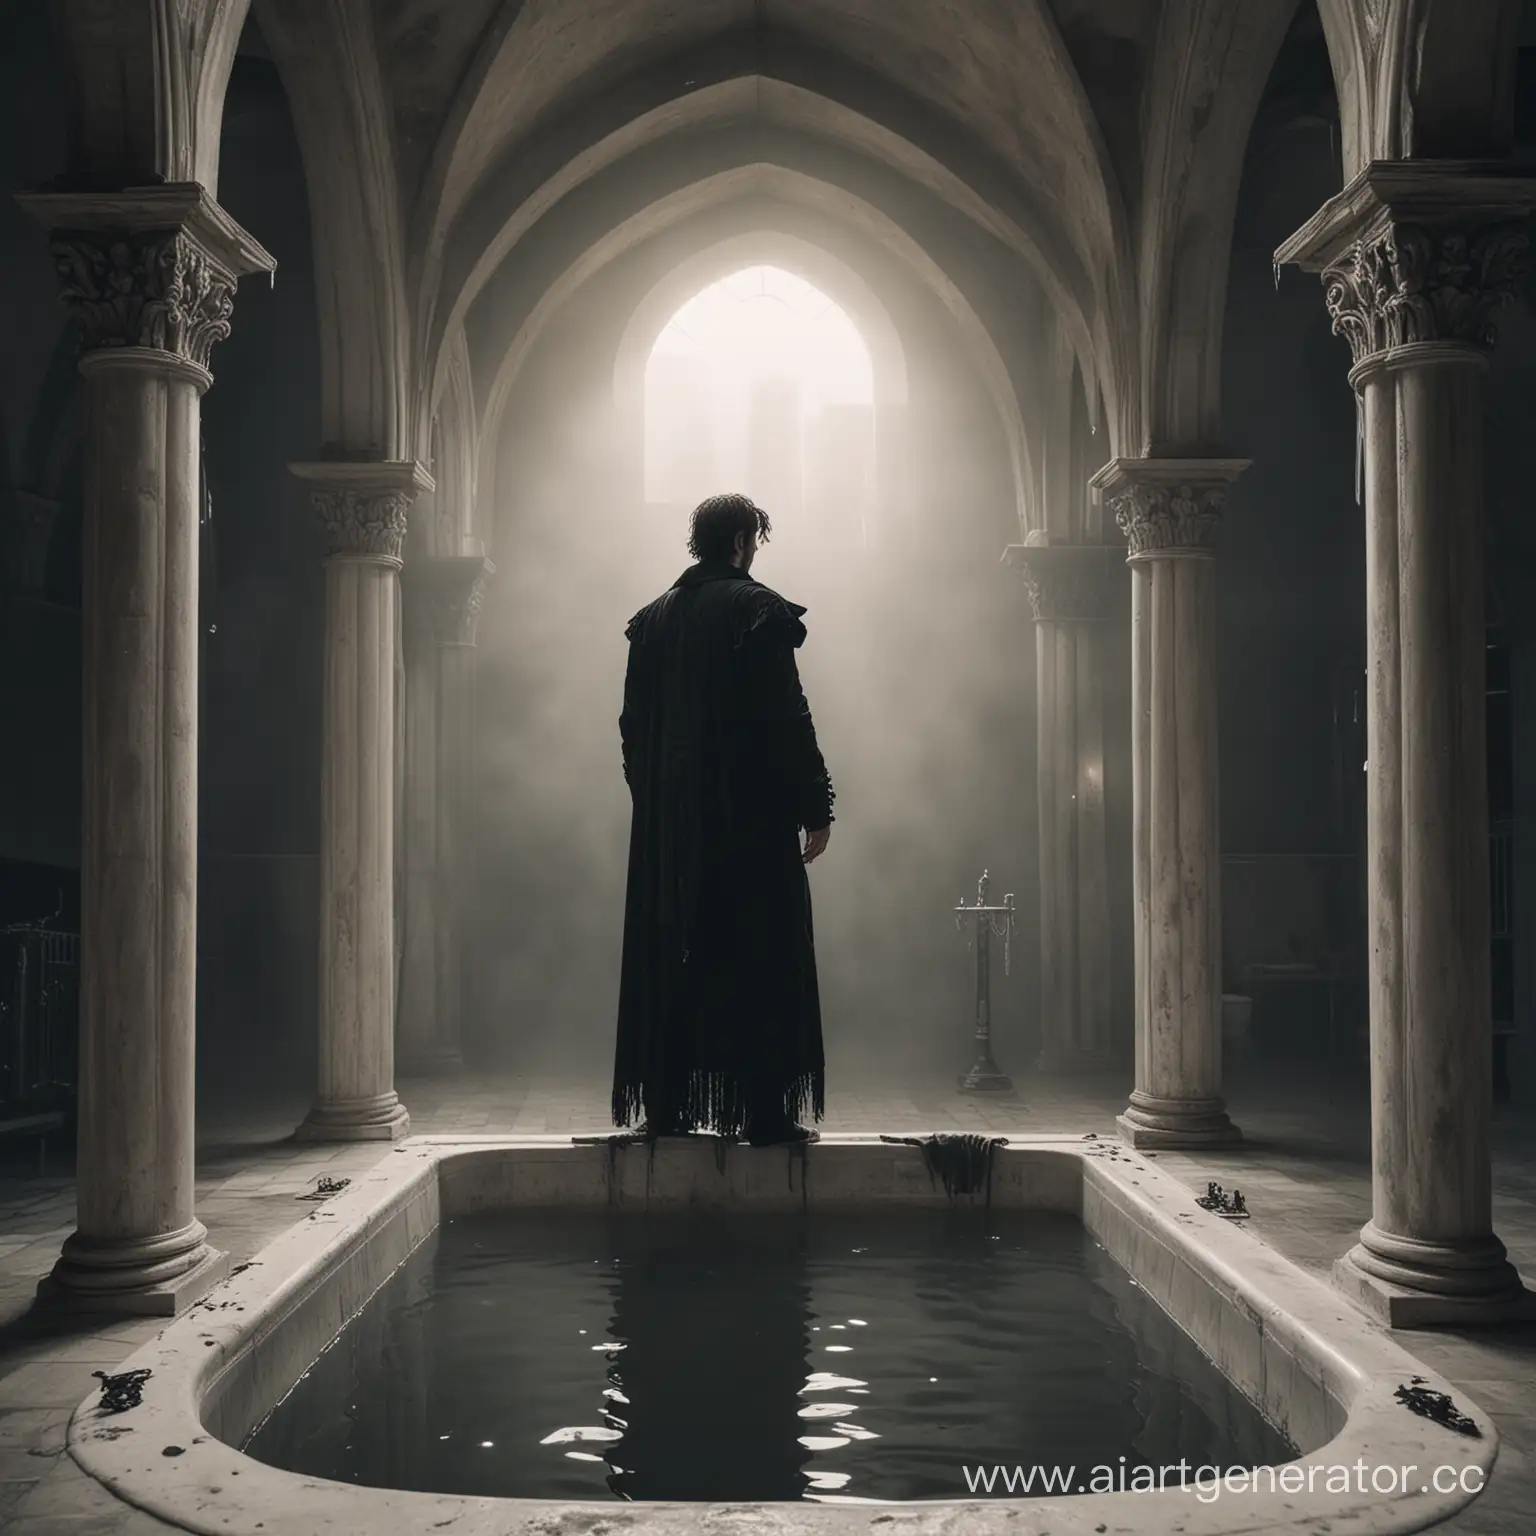 загадочный человек стоит в ванне готического стиля 
